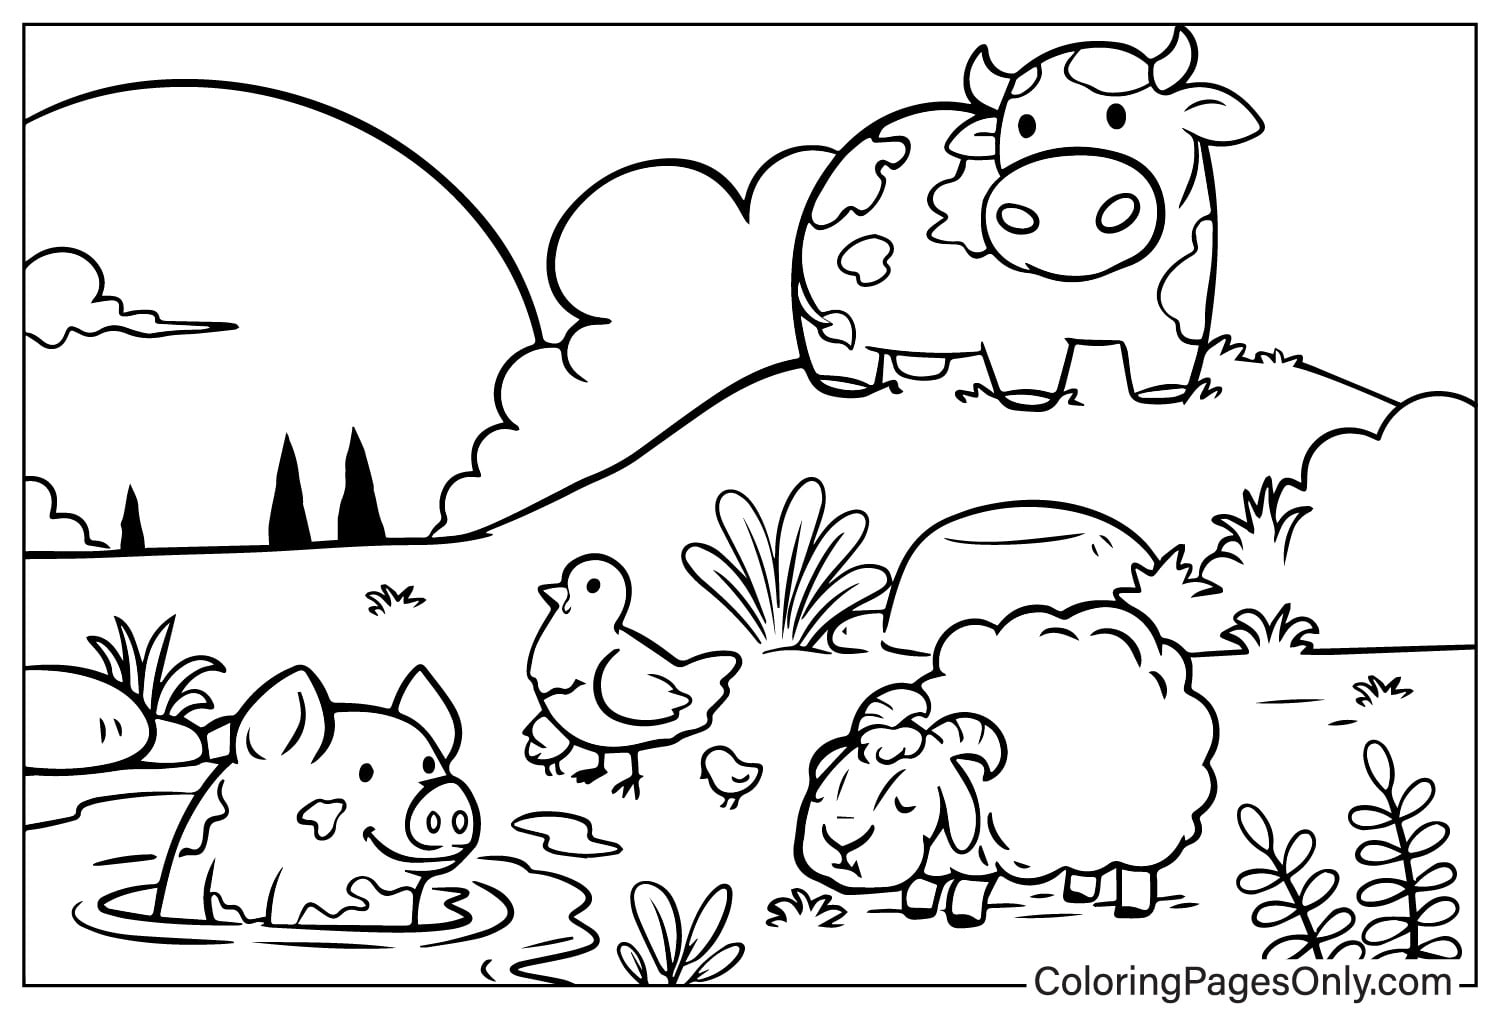 الأبقار والخنازير والأغنام والدجاج في المزرعة من حيوانات المزرعة